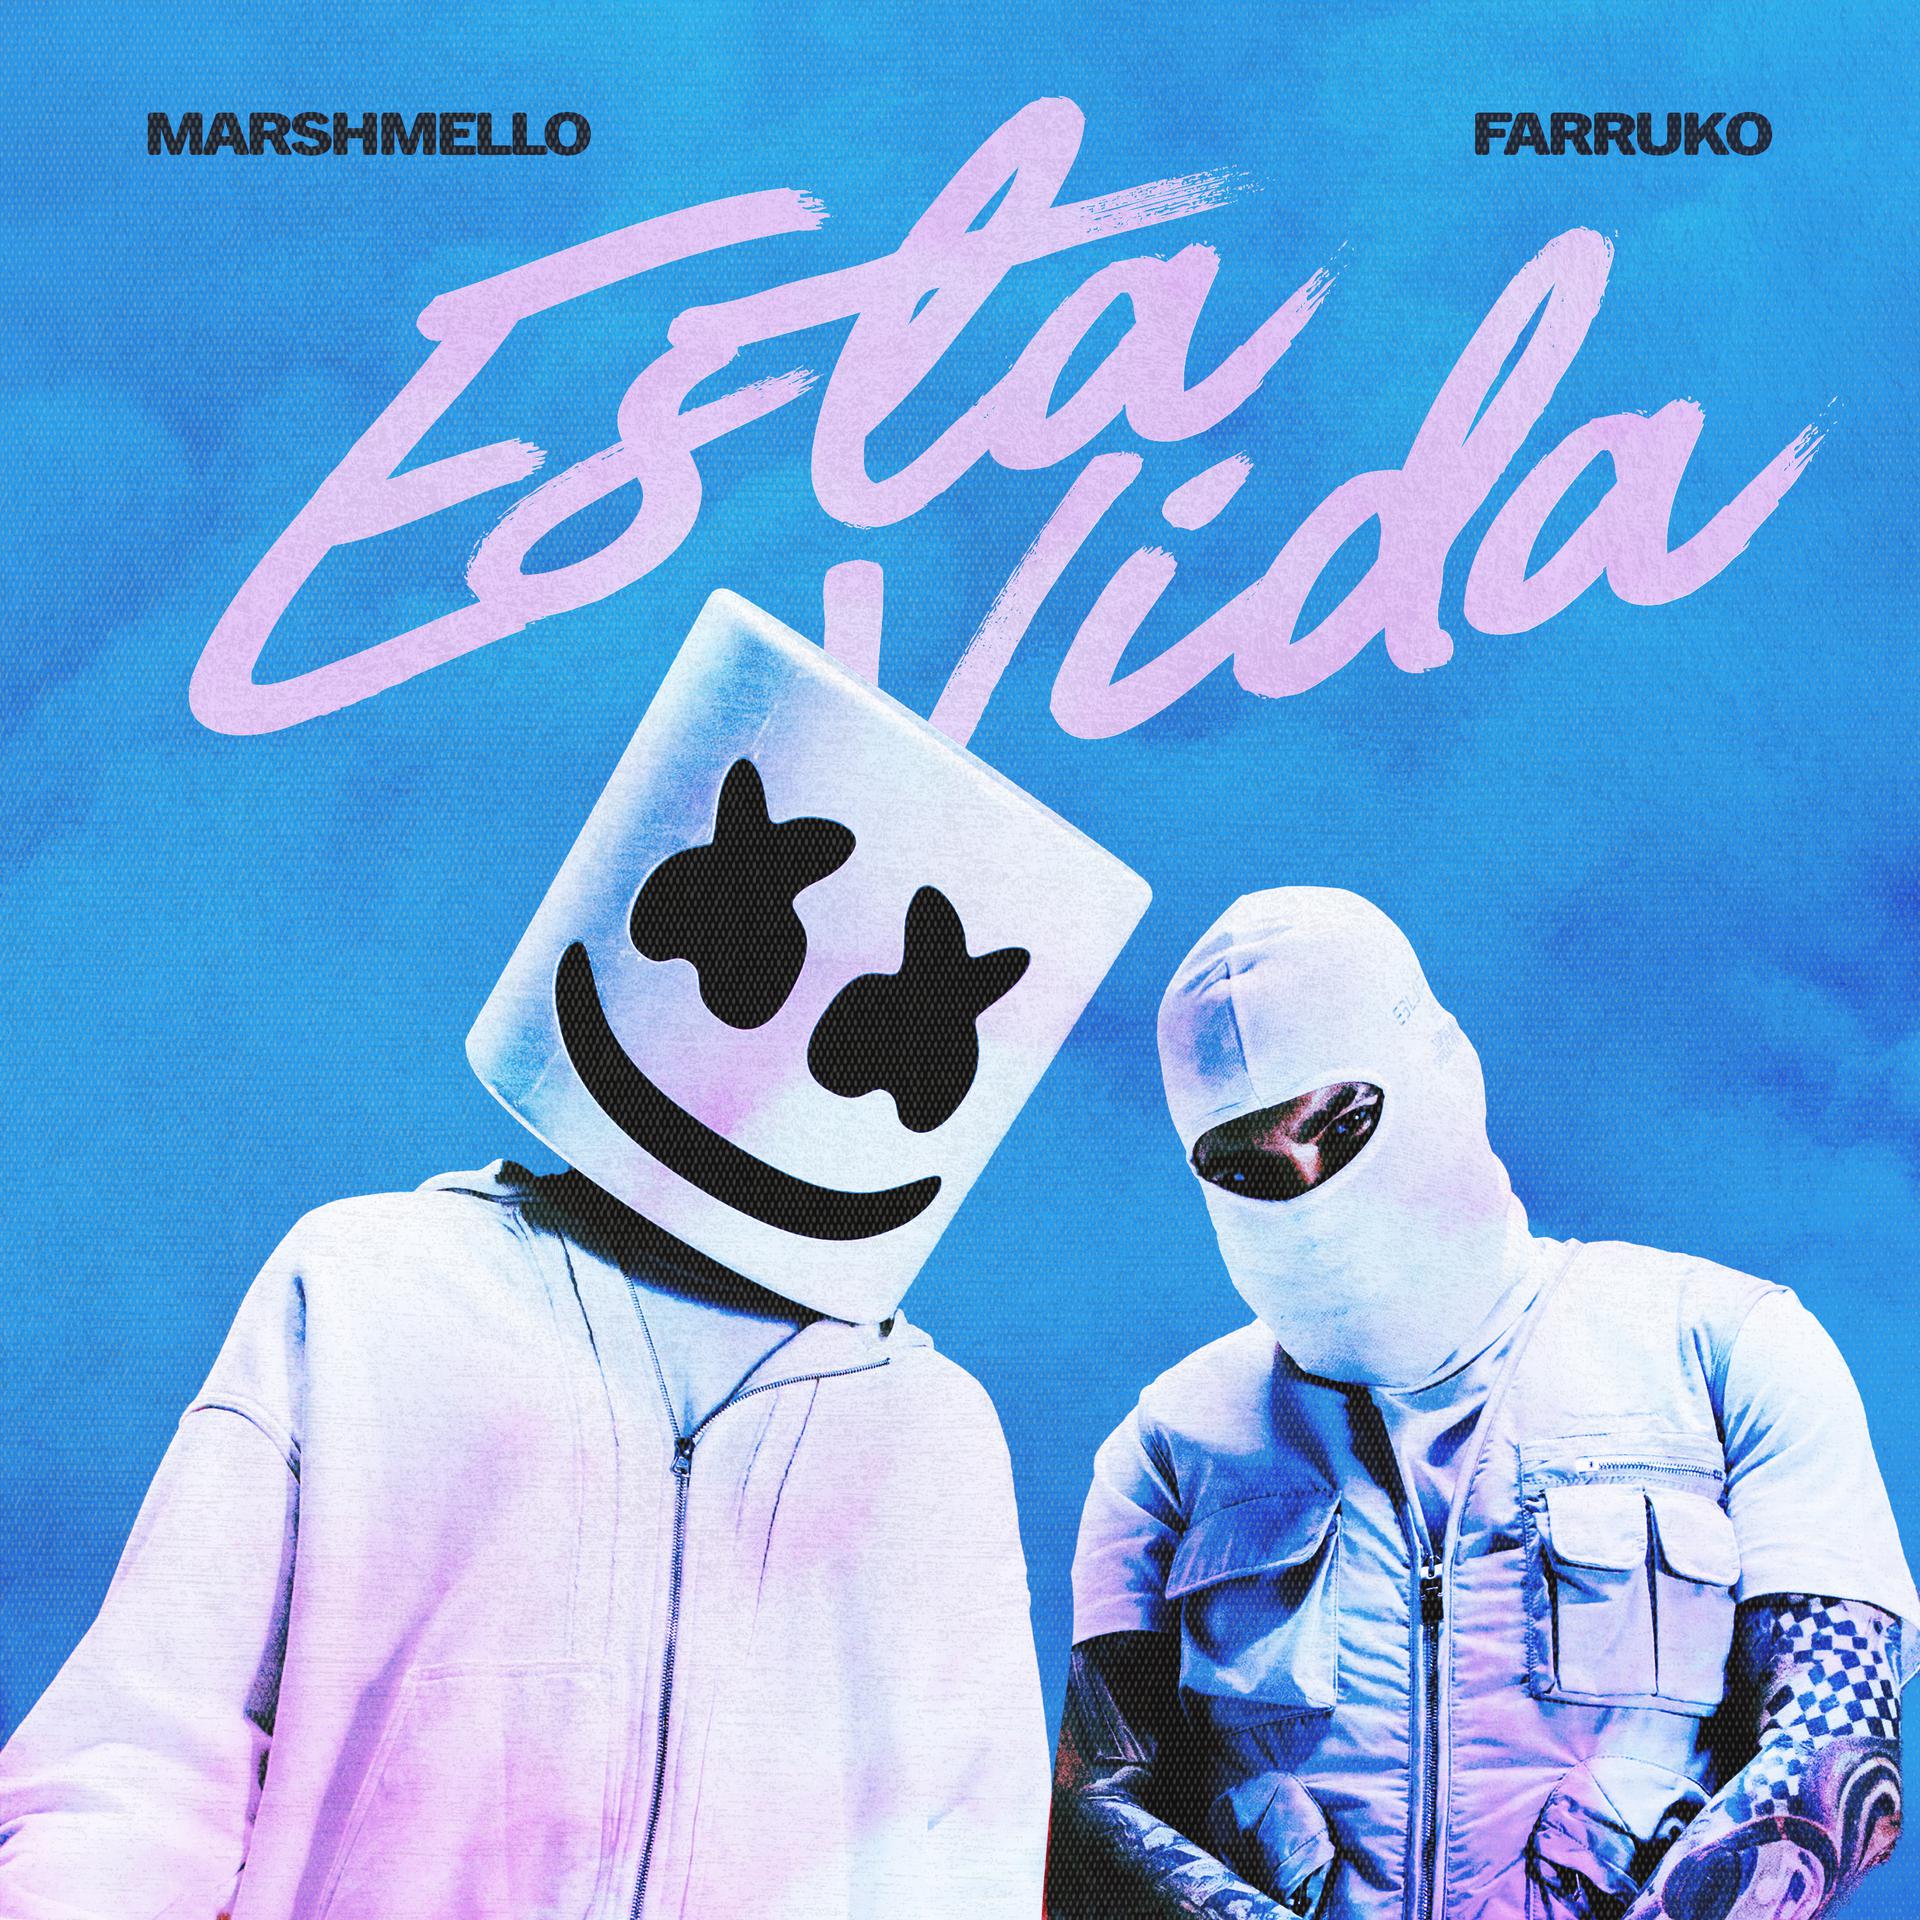 MARSHMELLO y FARRUKO unen fuerzas para el lanzamiento de su nuevo sencillo y video “ESTA VIDA”